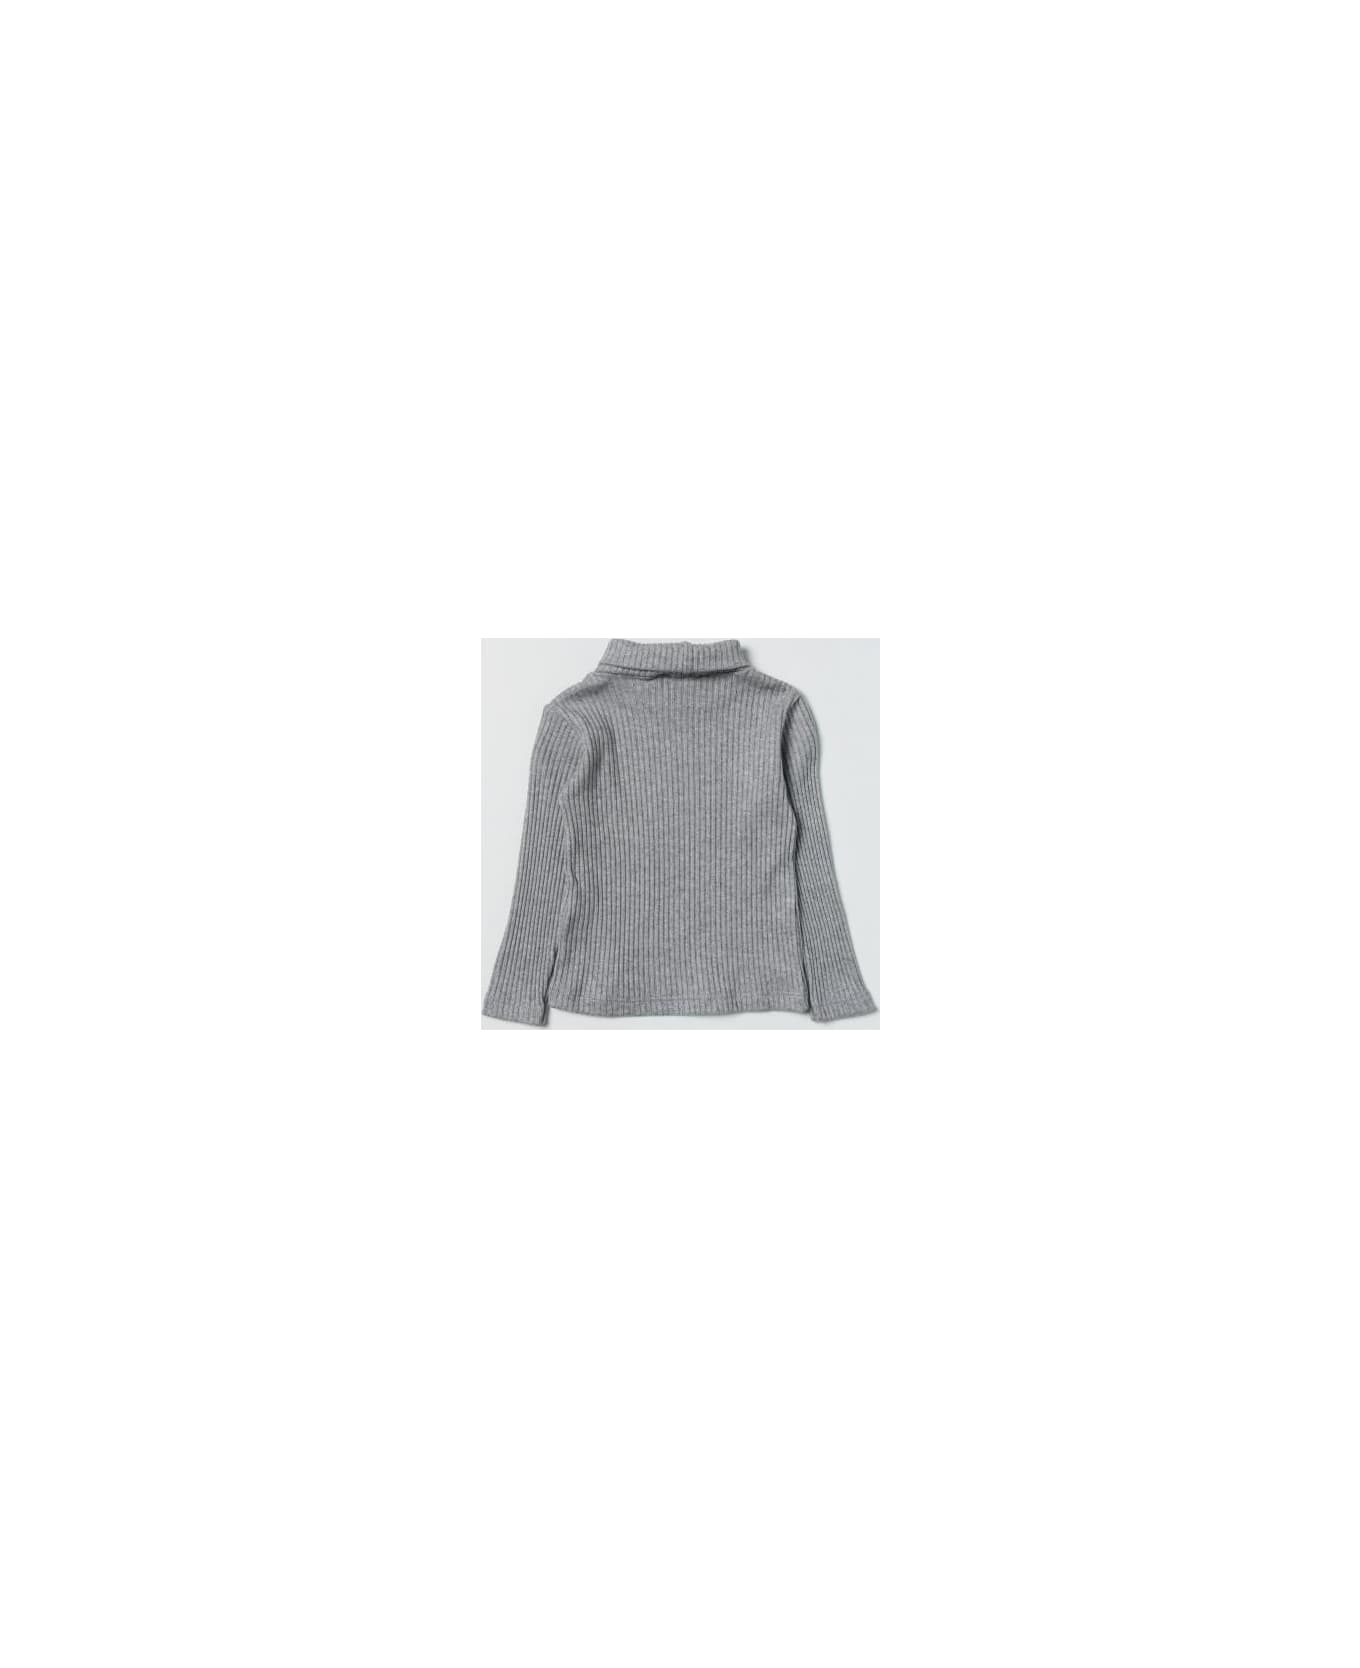 Manuel Ritz High Neck Sweater - Gray